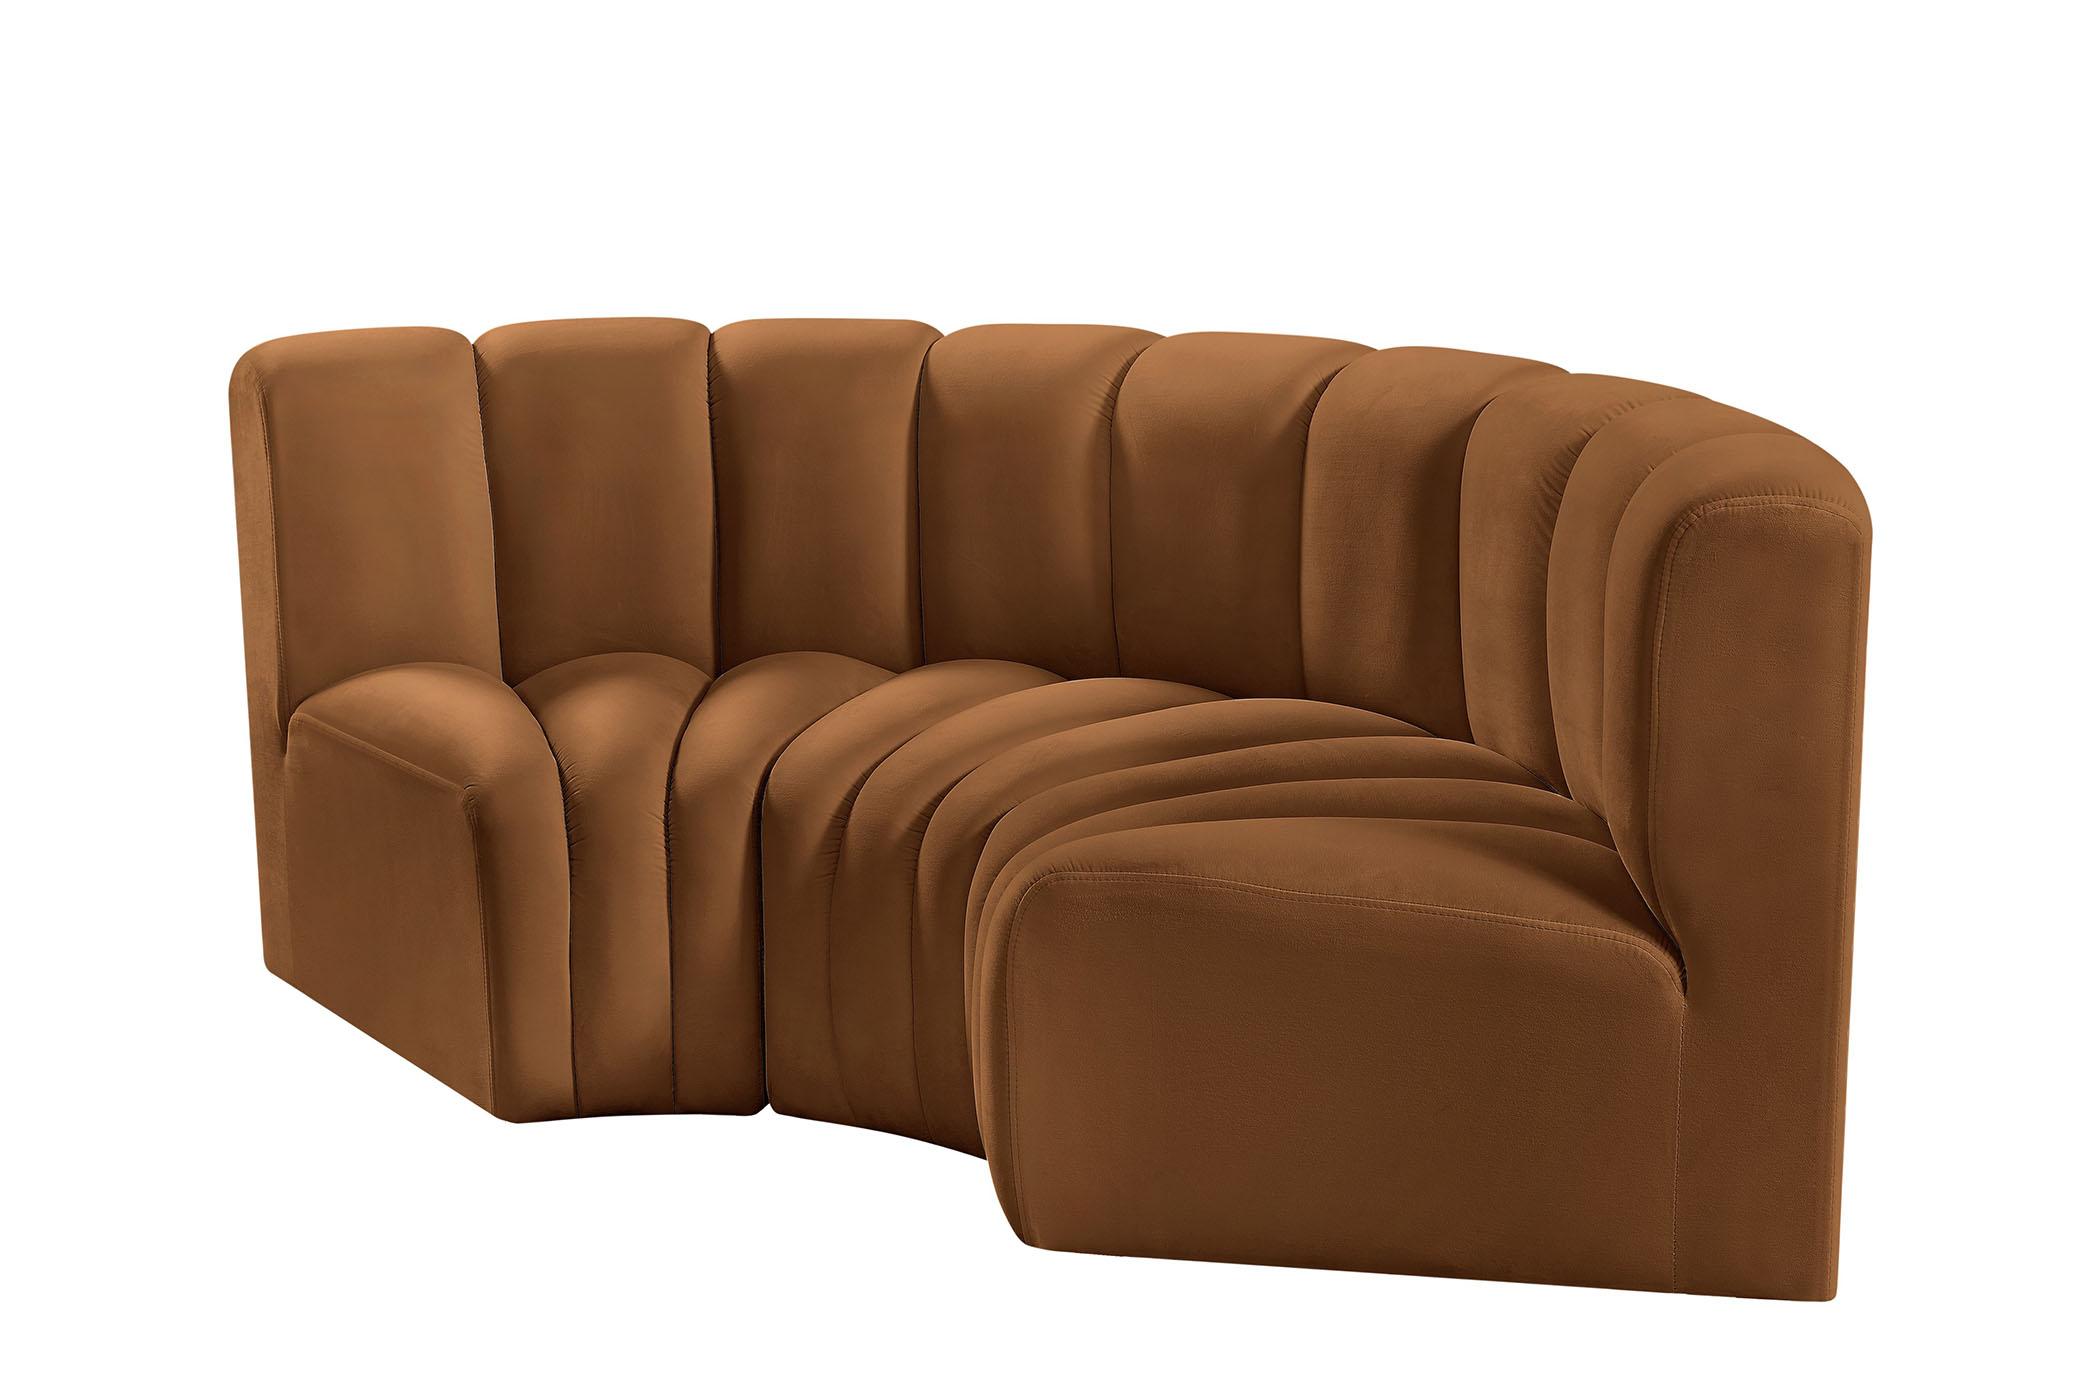 

    
103Saddle-S3C Meridian Furniture Modular Sectional Sofa
